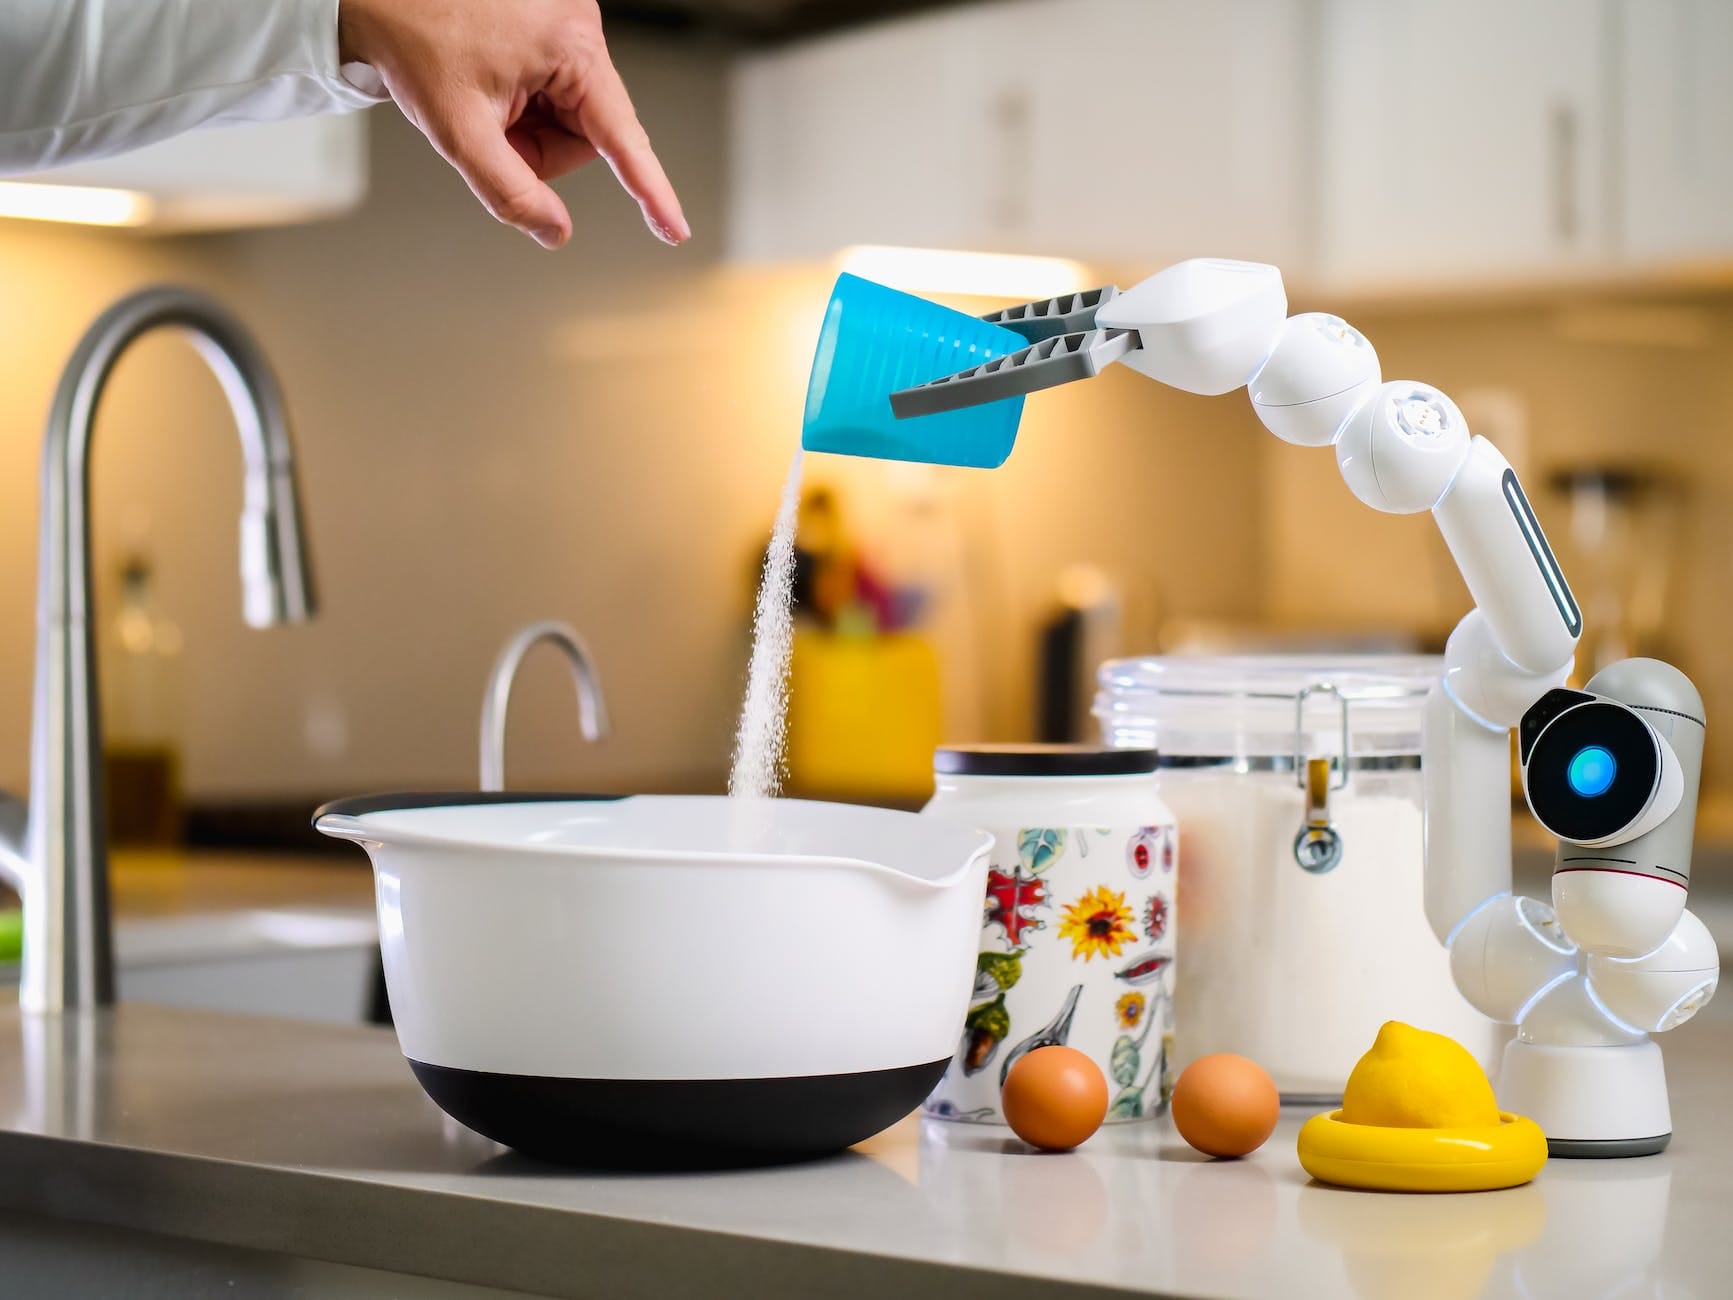 robot hand pouring flour into white bowl